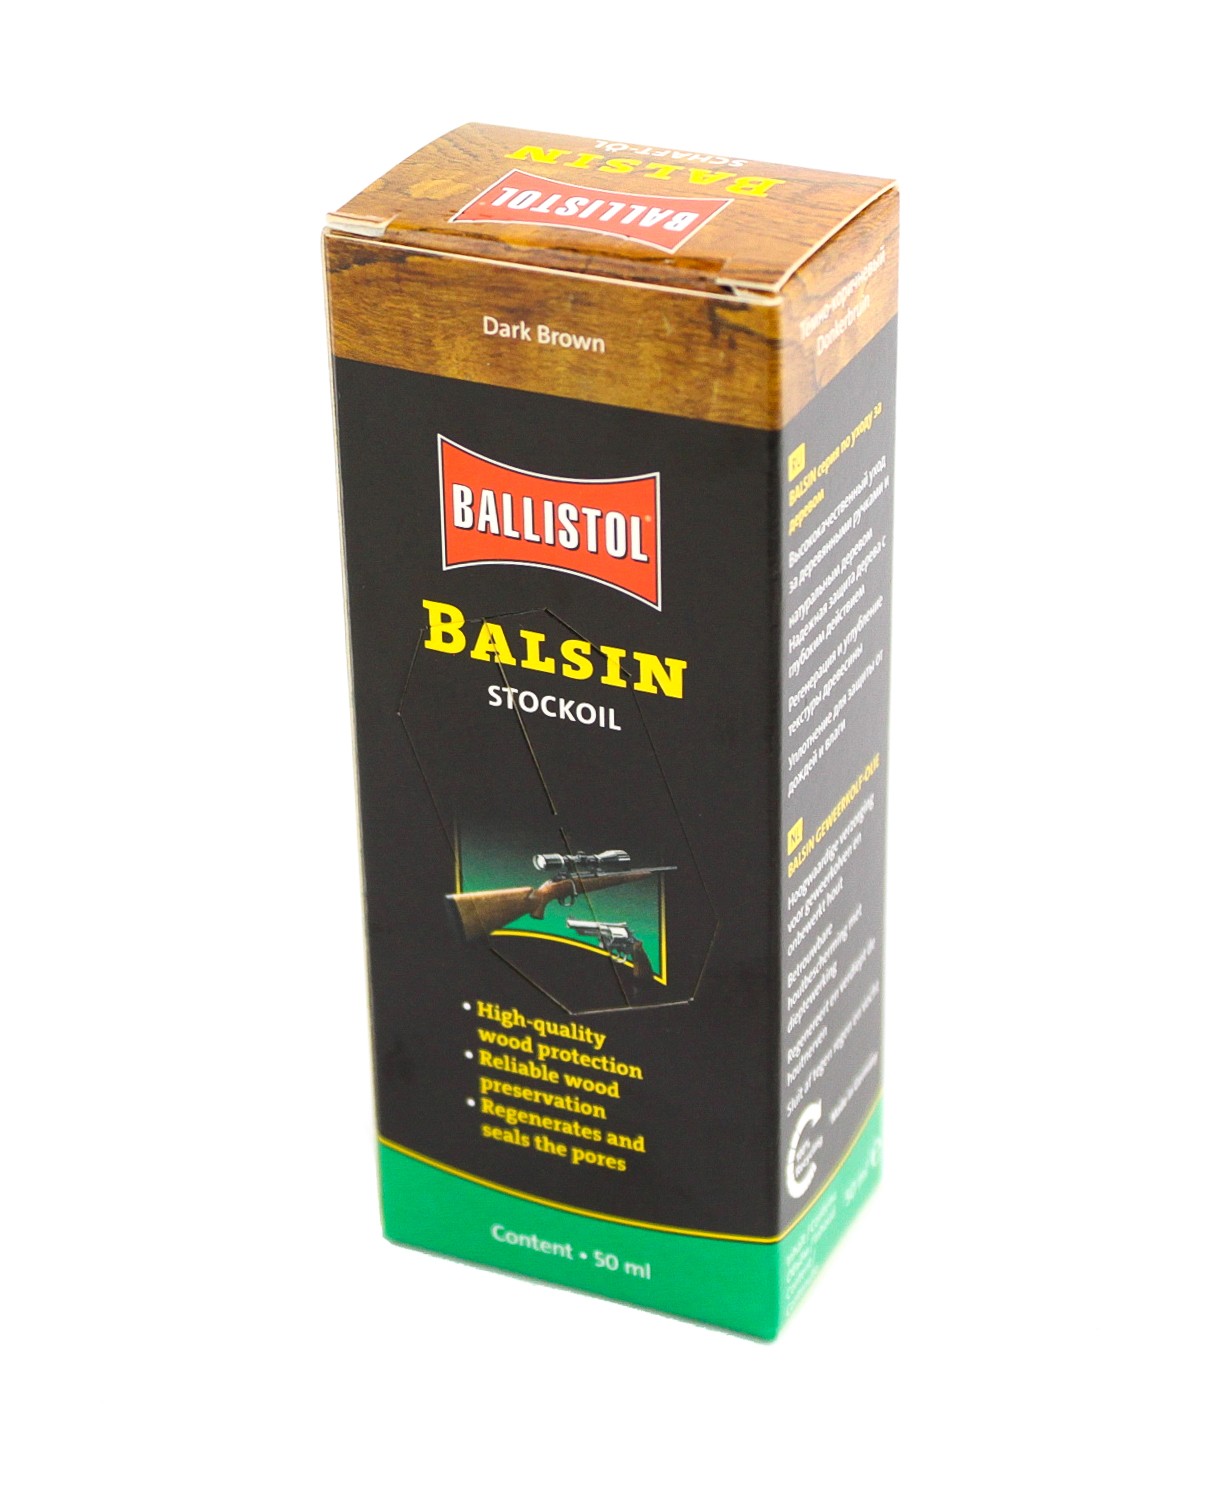 Средство Ballistol Balsin для дерева Scherell Schaftol 50мл темно-коричневое - фото 1